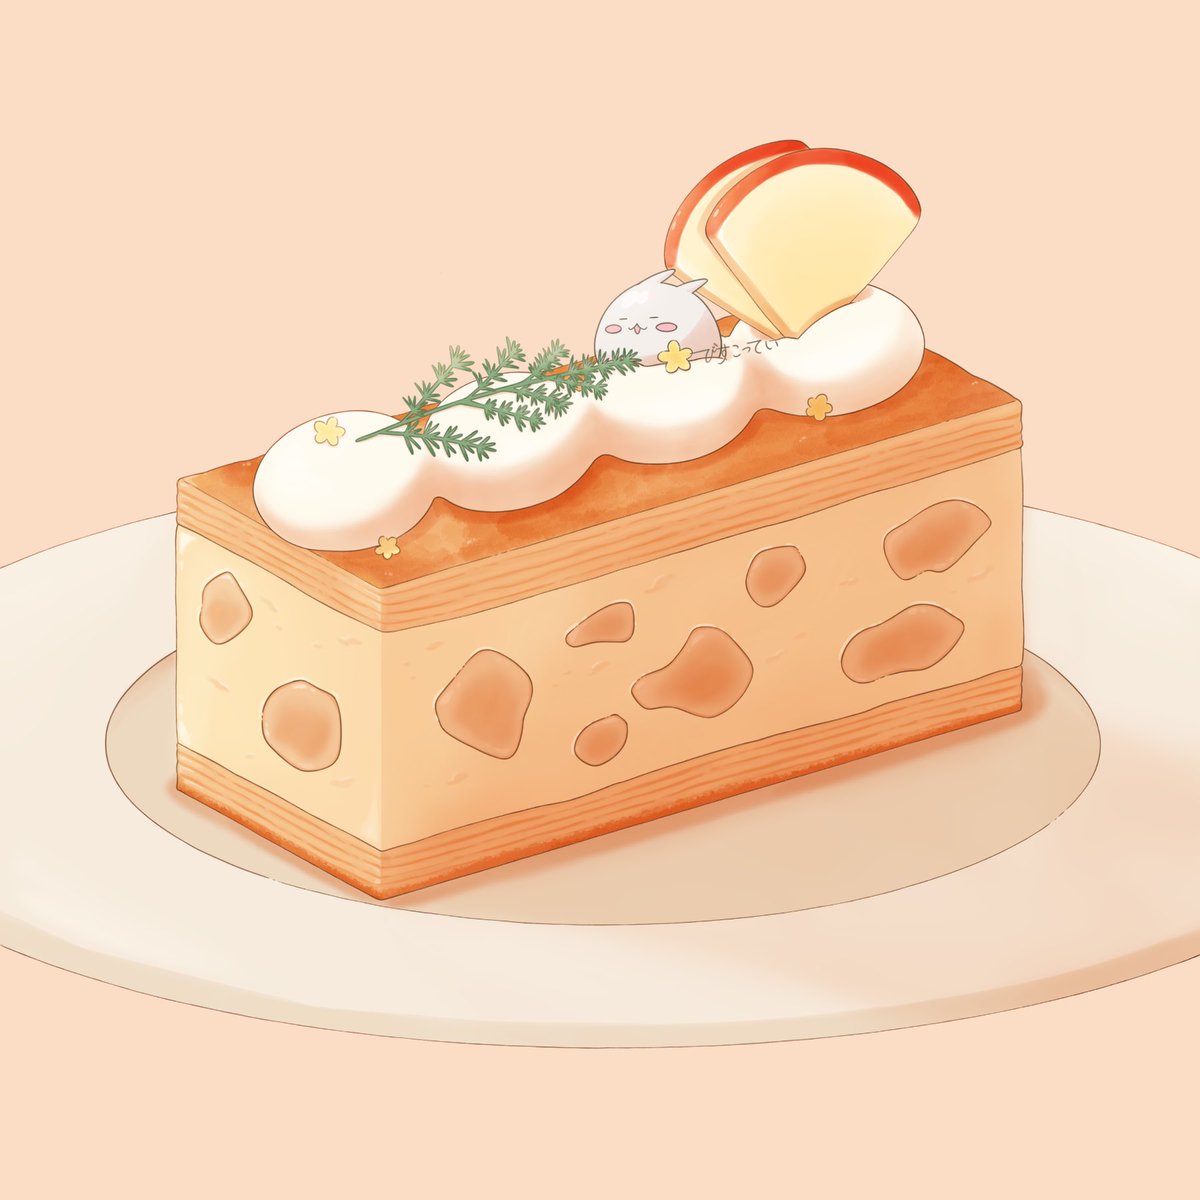 「#洋菓子の日色とりどりのケーキたち 」|びすこってい🍰5月コミティア/デザフェスのイラスト